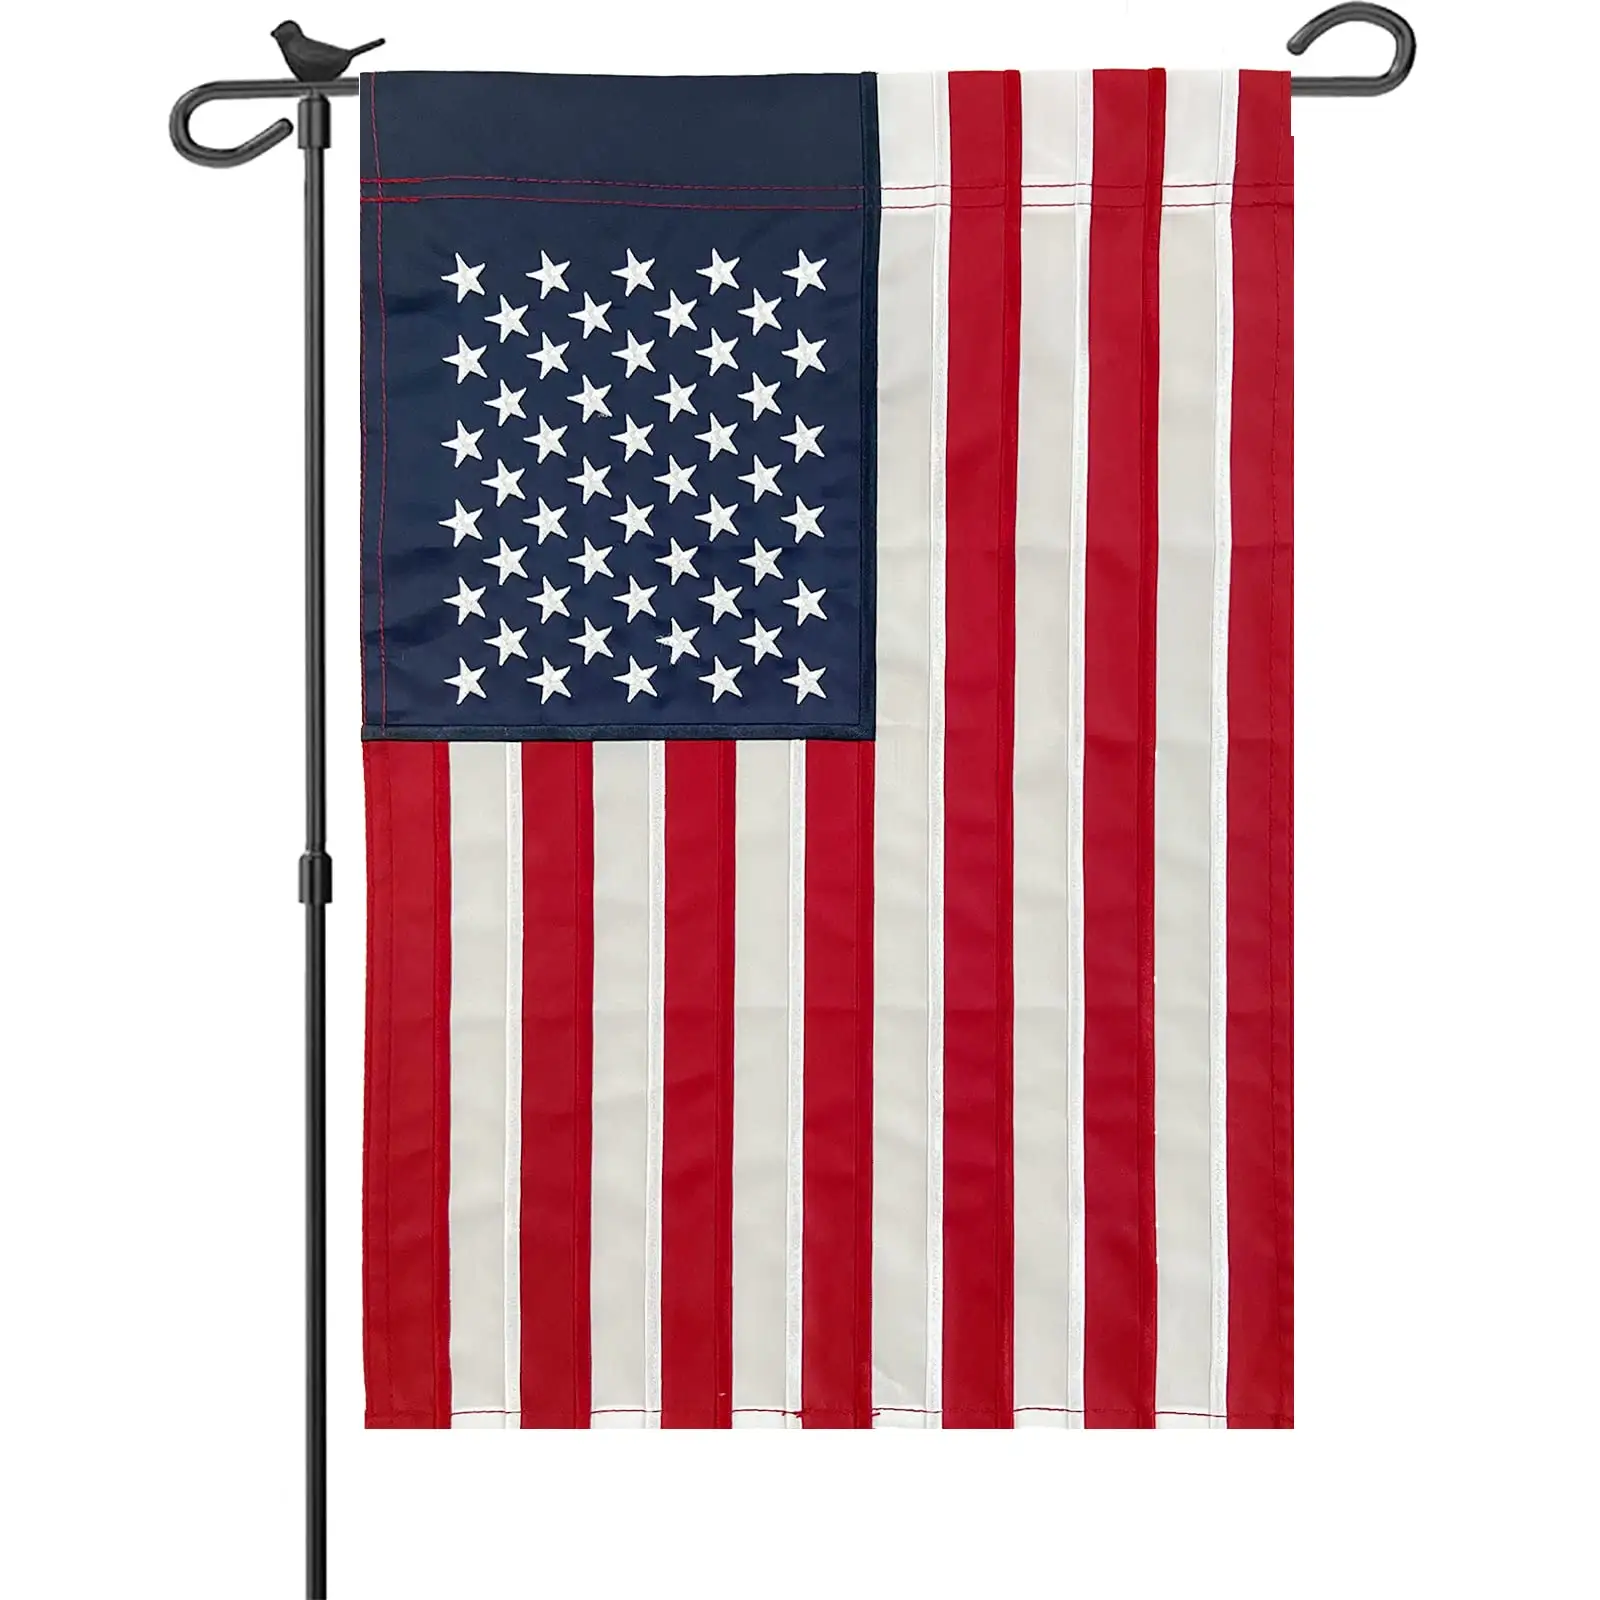 Mỹ Hoa Kỳ July ngày Quốc Khánh thứ 4 sân trang trí Yêu Nước Cờ vườn cao cấp hai mặt cờ Vườn Hoa Kỳ